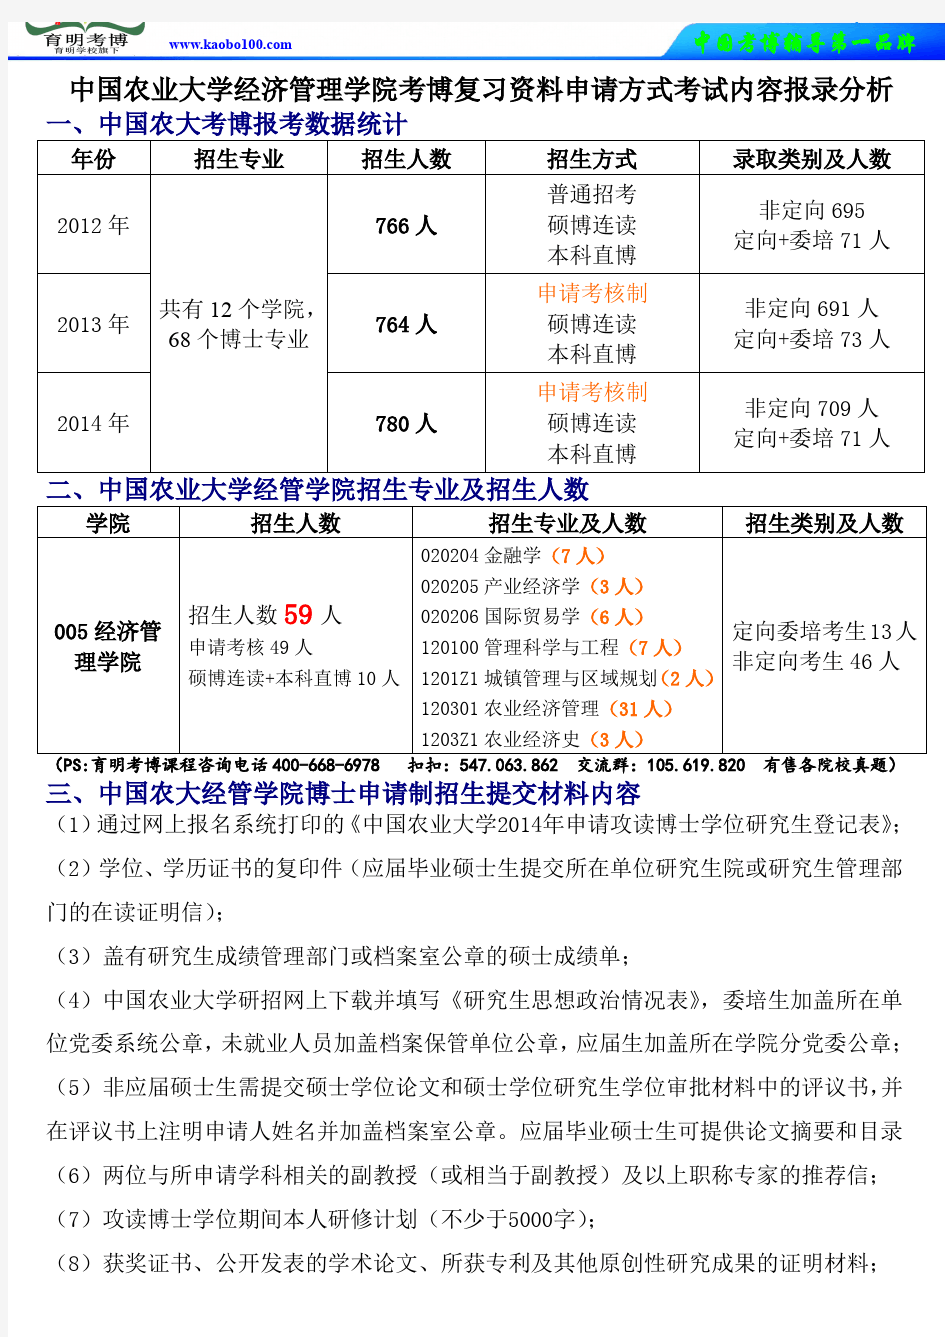 中国农业大学经济管理学院考博复习资料申请方式考试内容报录分析-育明考博